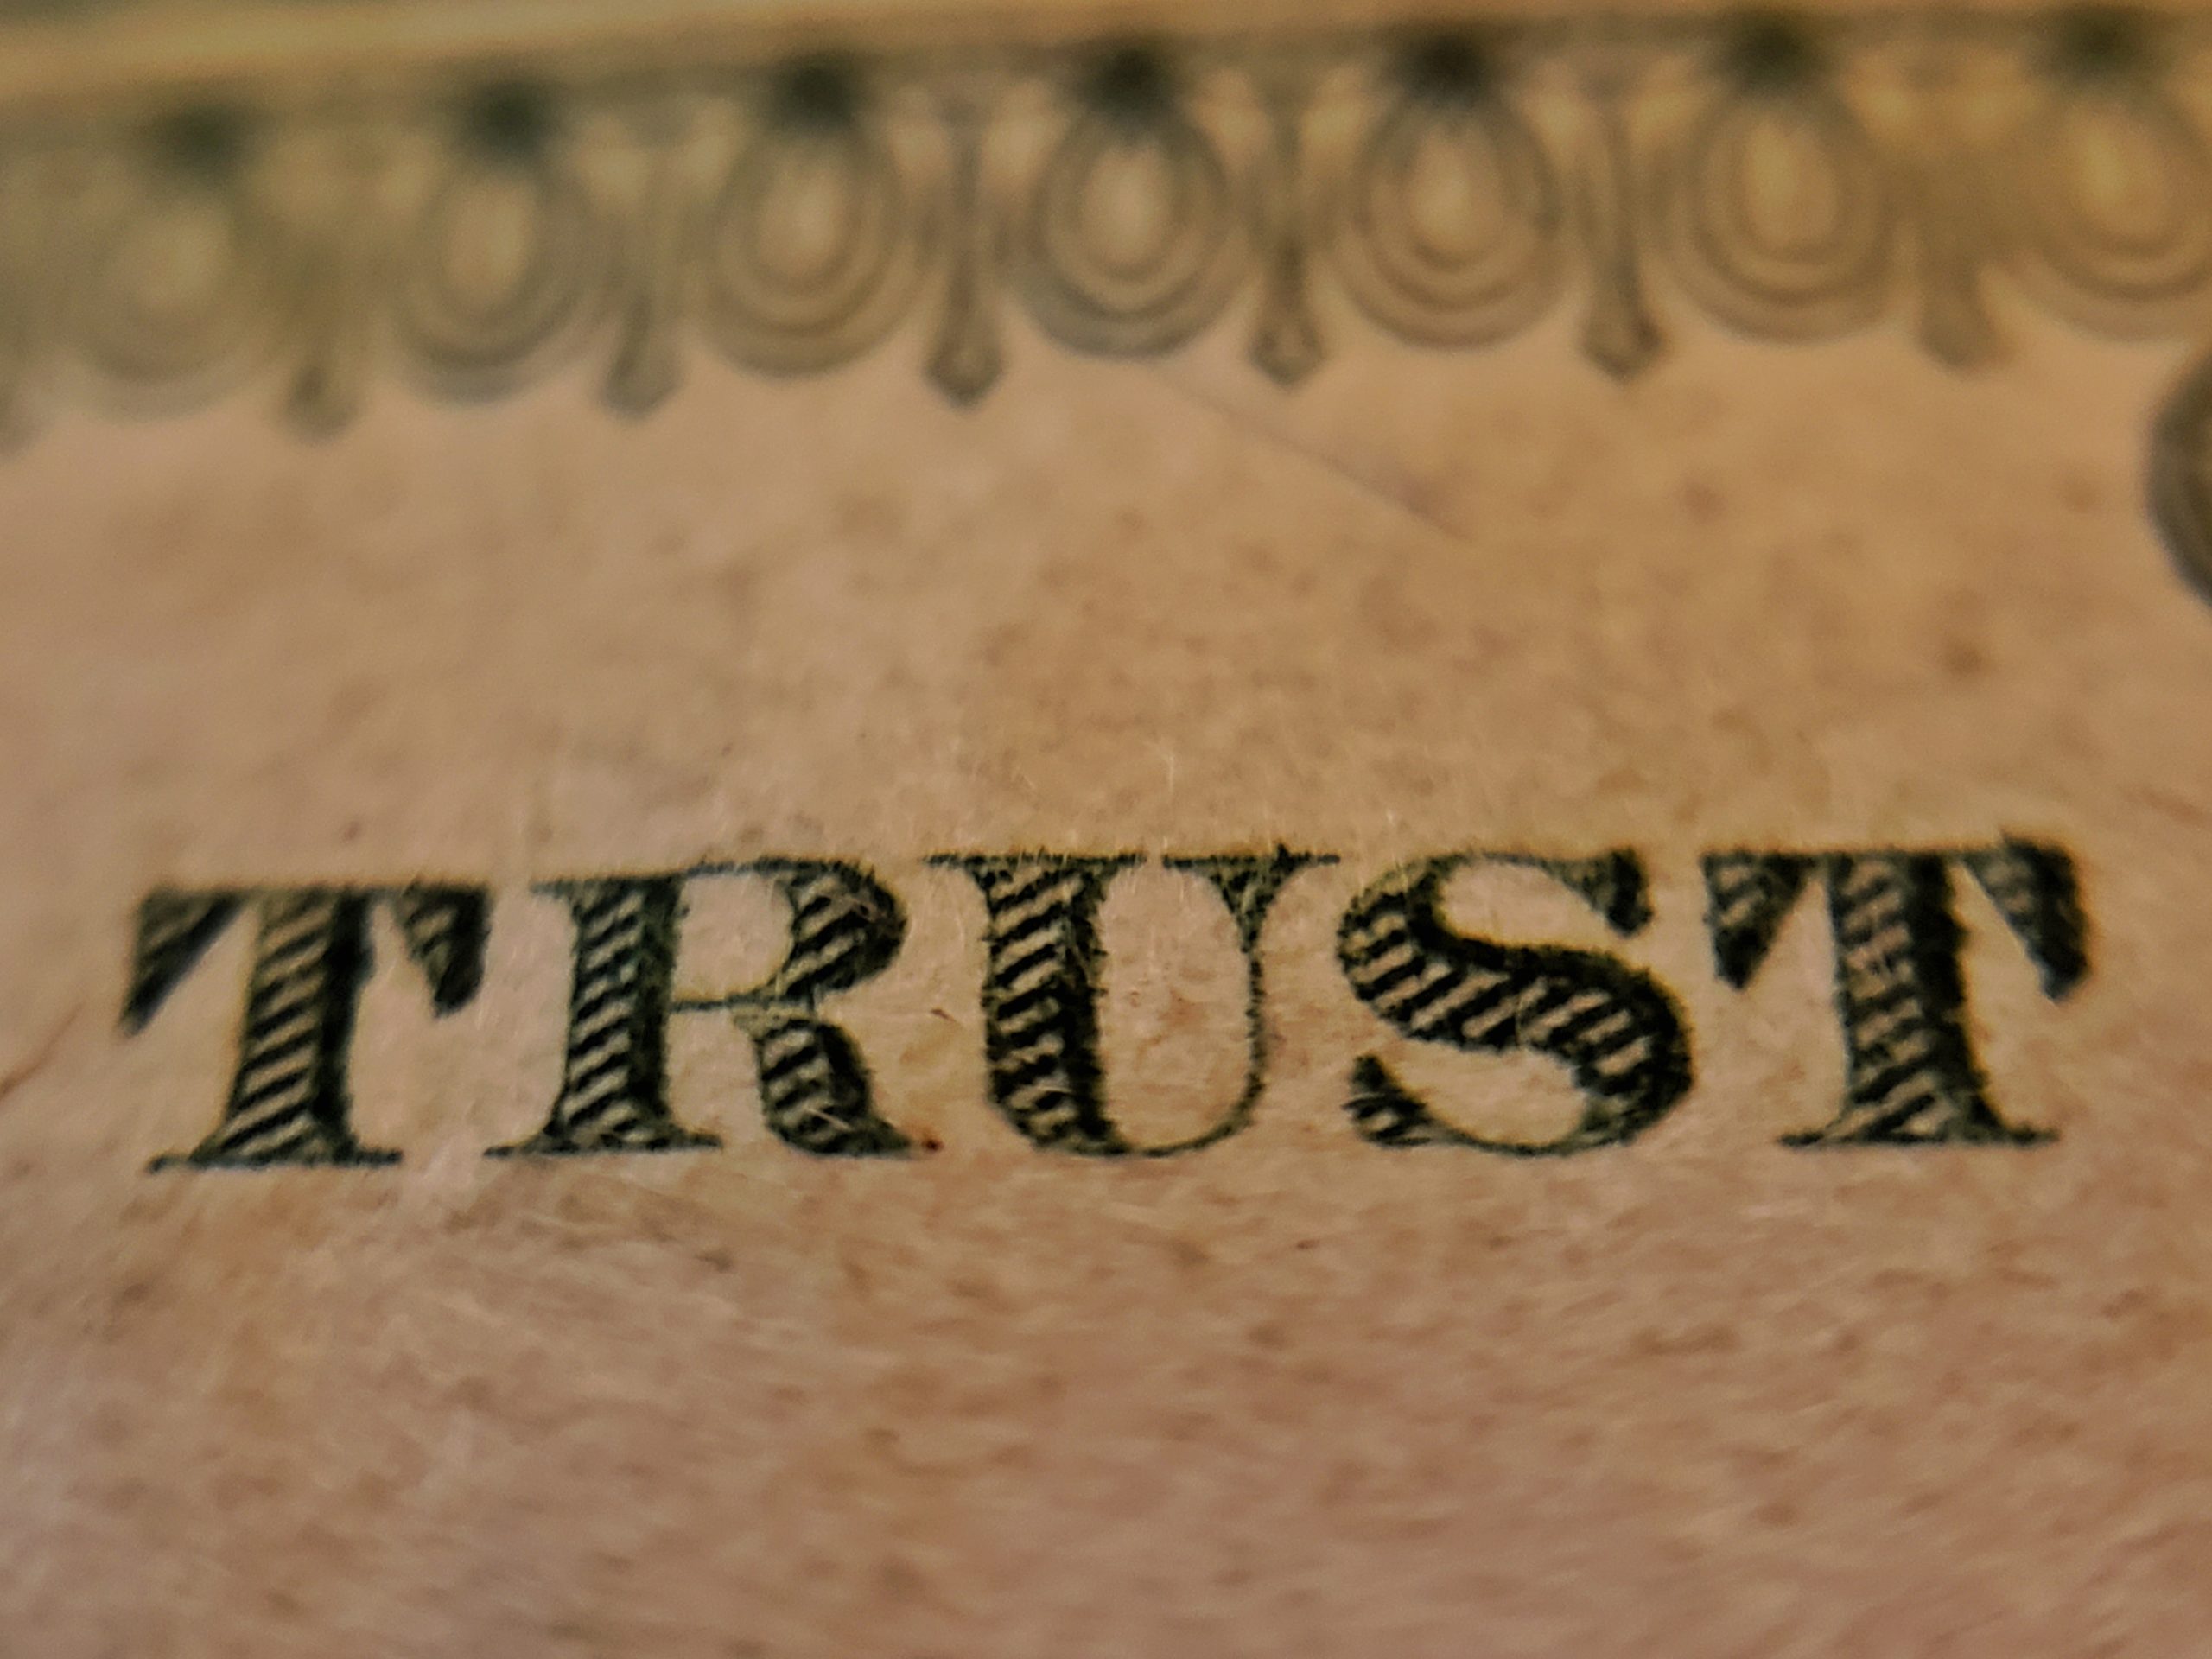 Generating More Trust Through Content Marketing